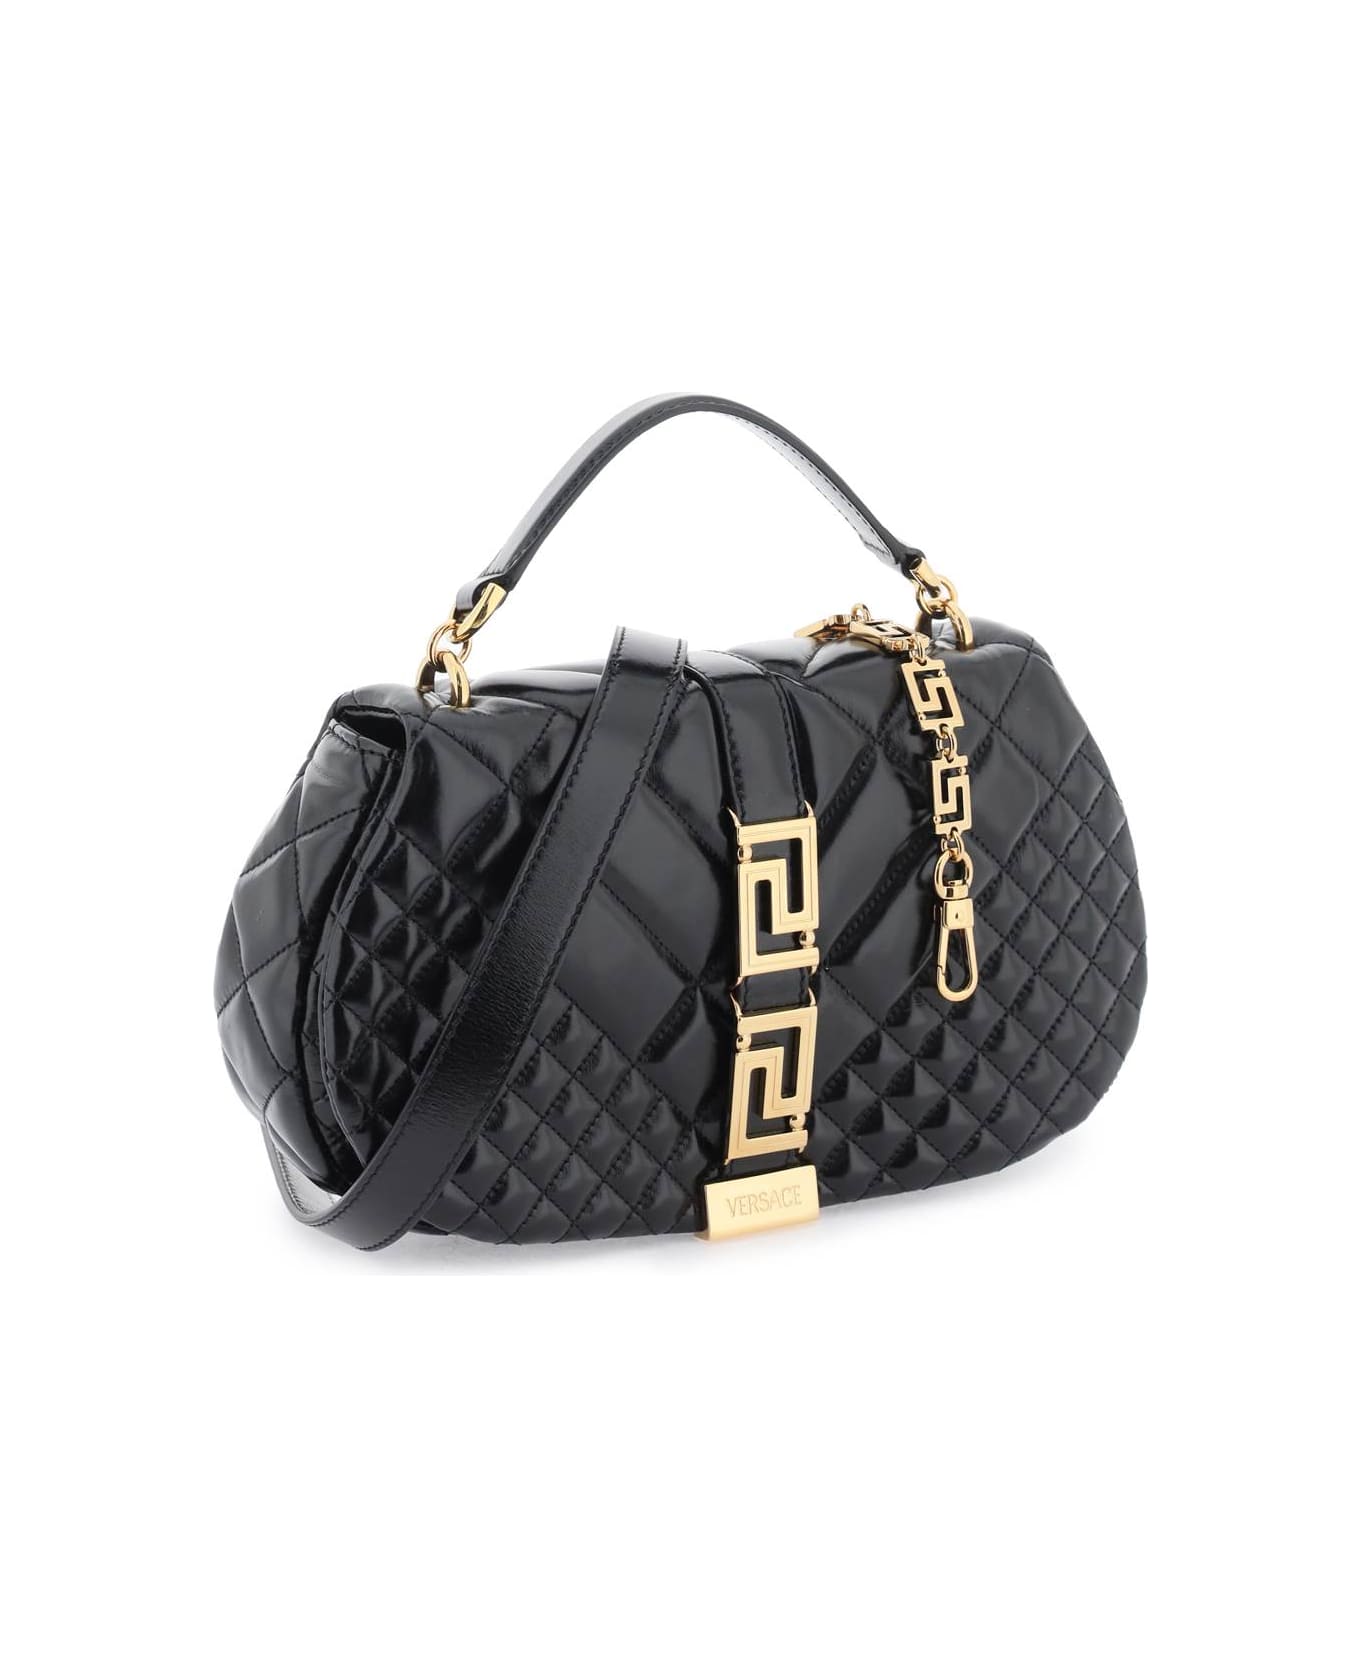 Versace 'greca Goddess' Shoulder Bag - BLACK VERSACE GOLD (Black)